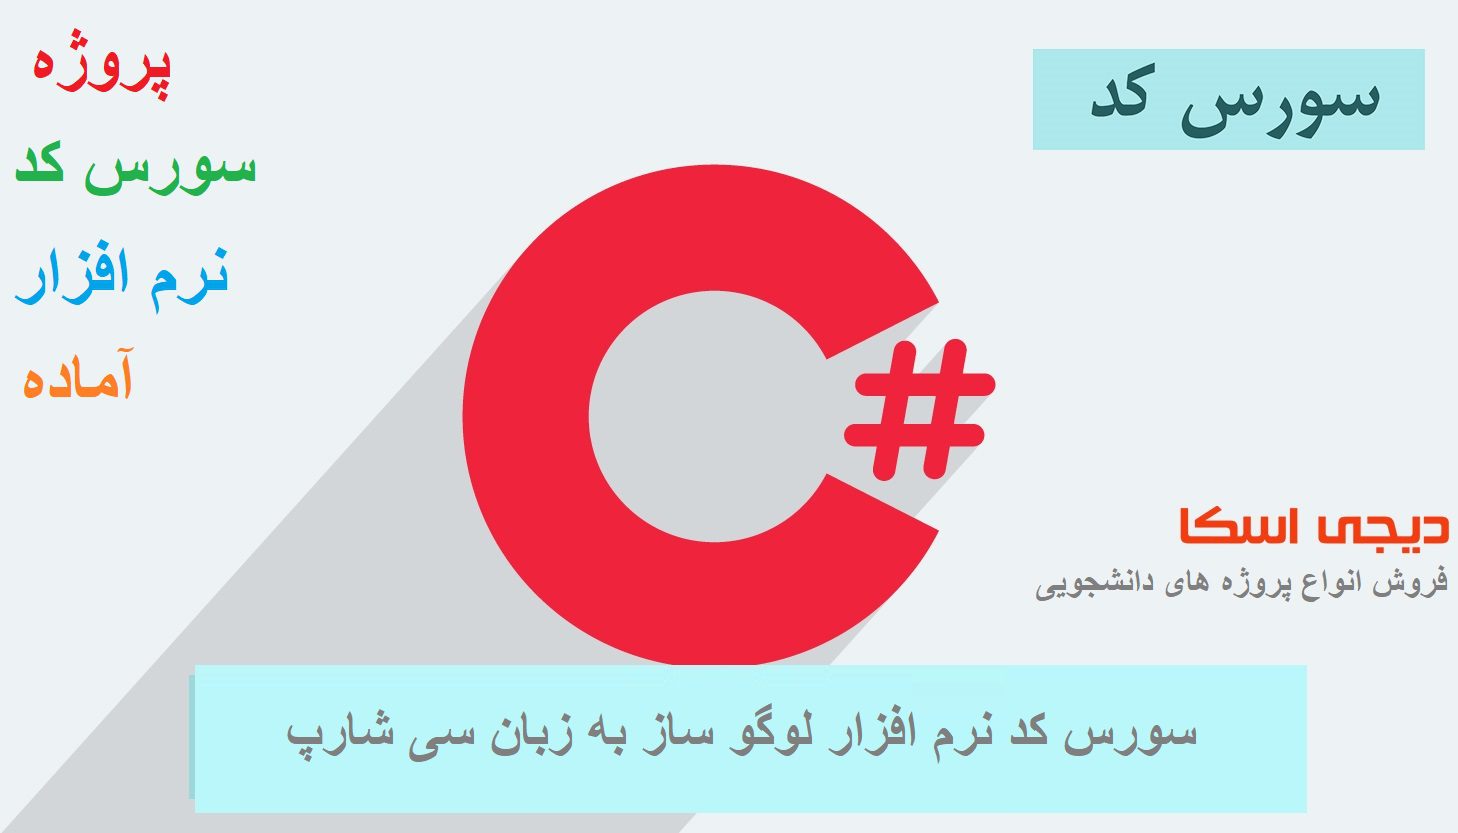 سورس کد نرم افزار لوگو به زبان سی شارپ #c